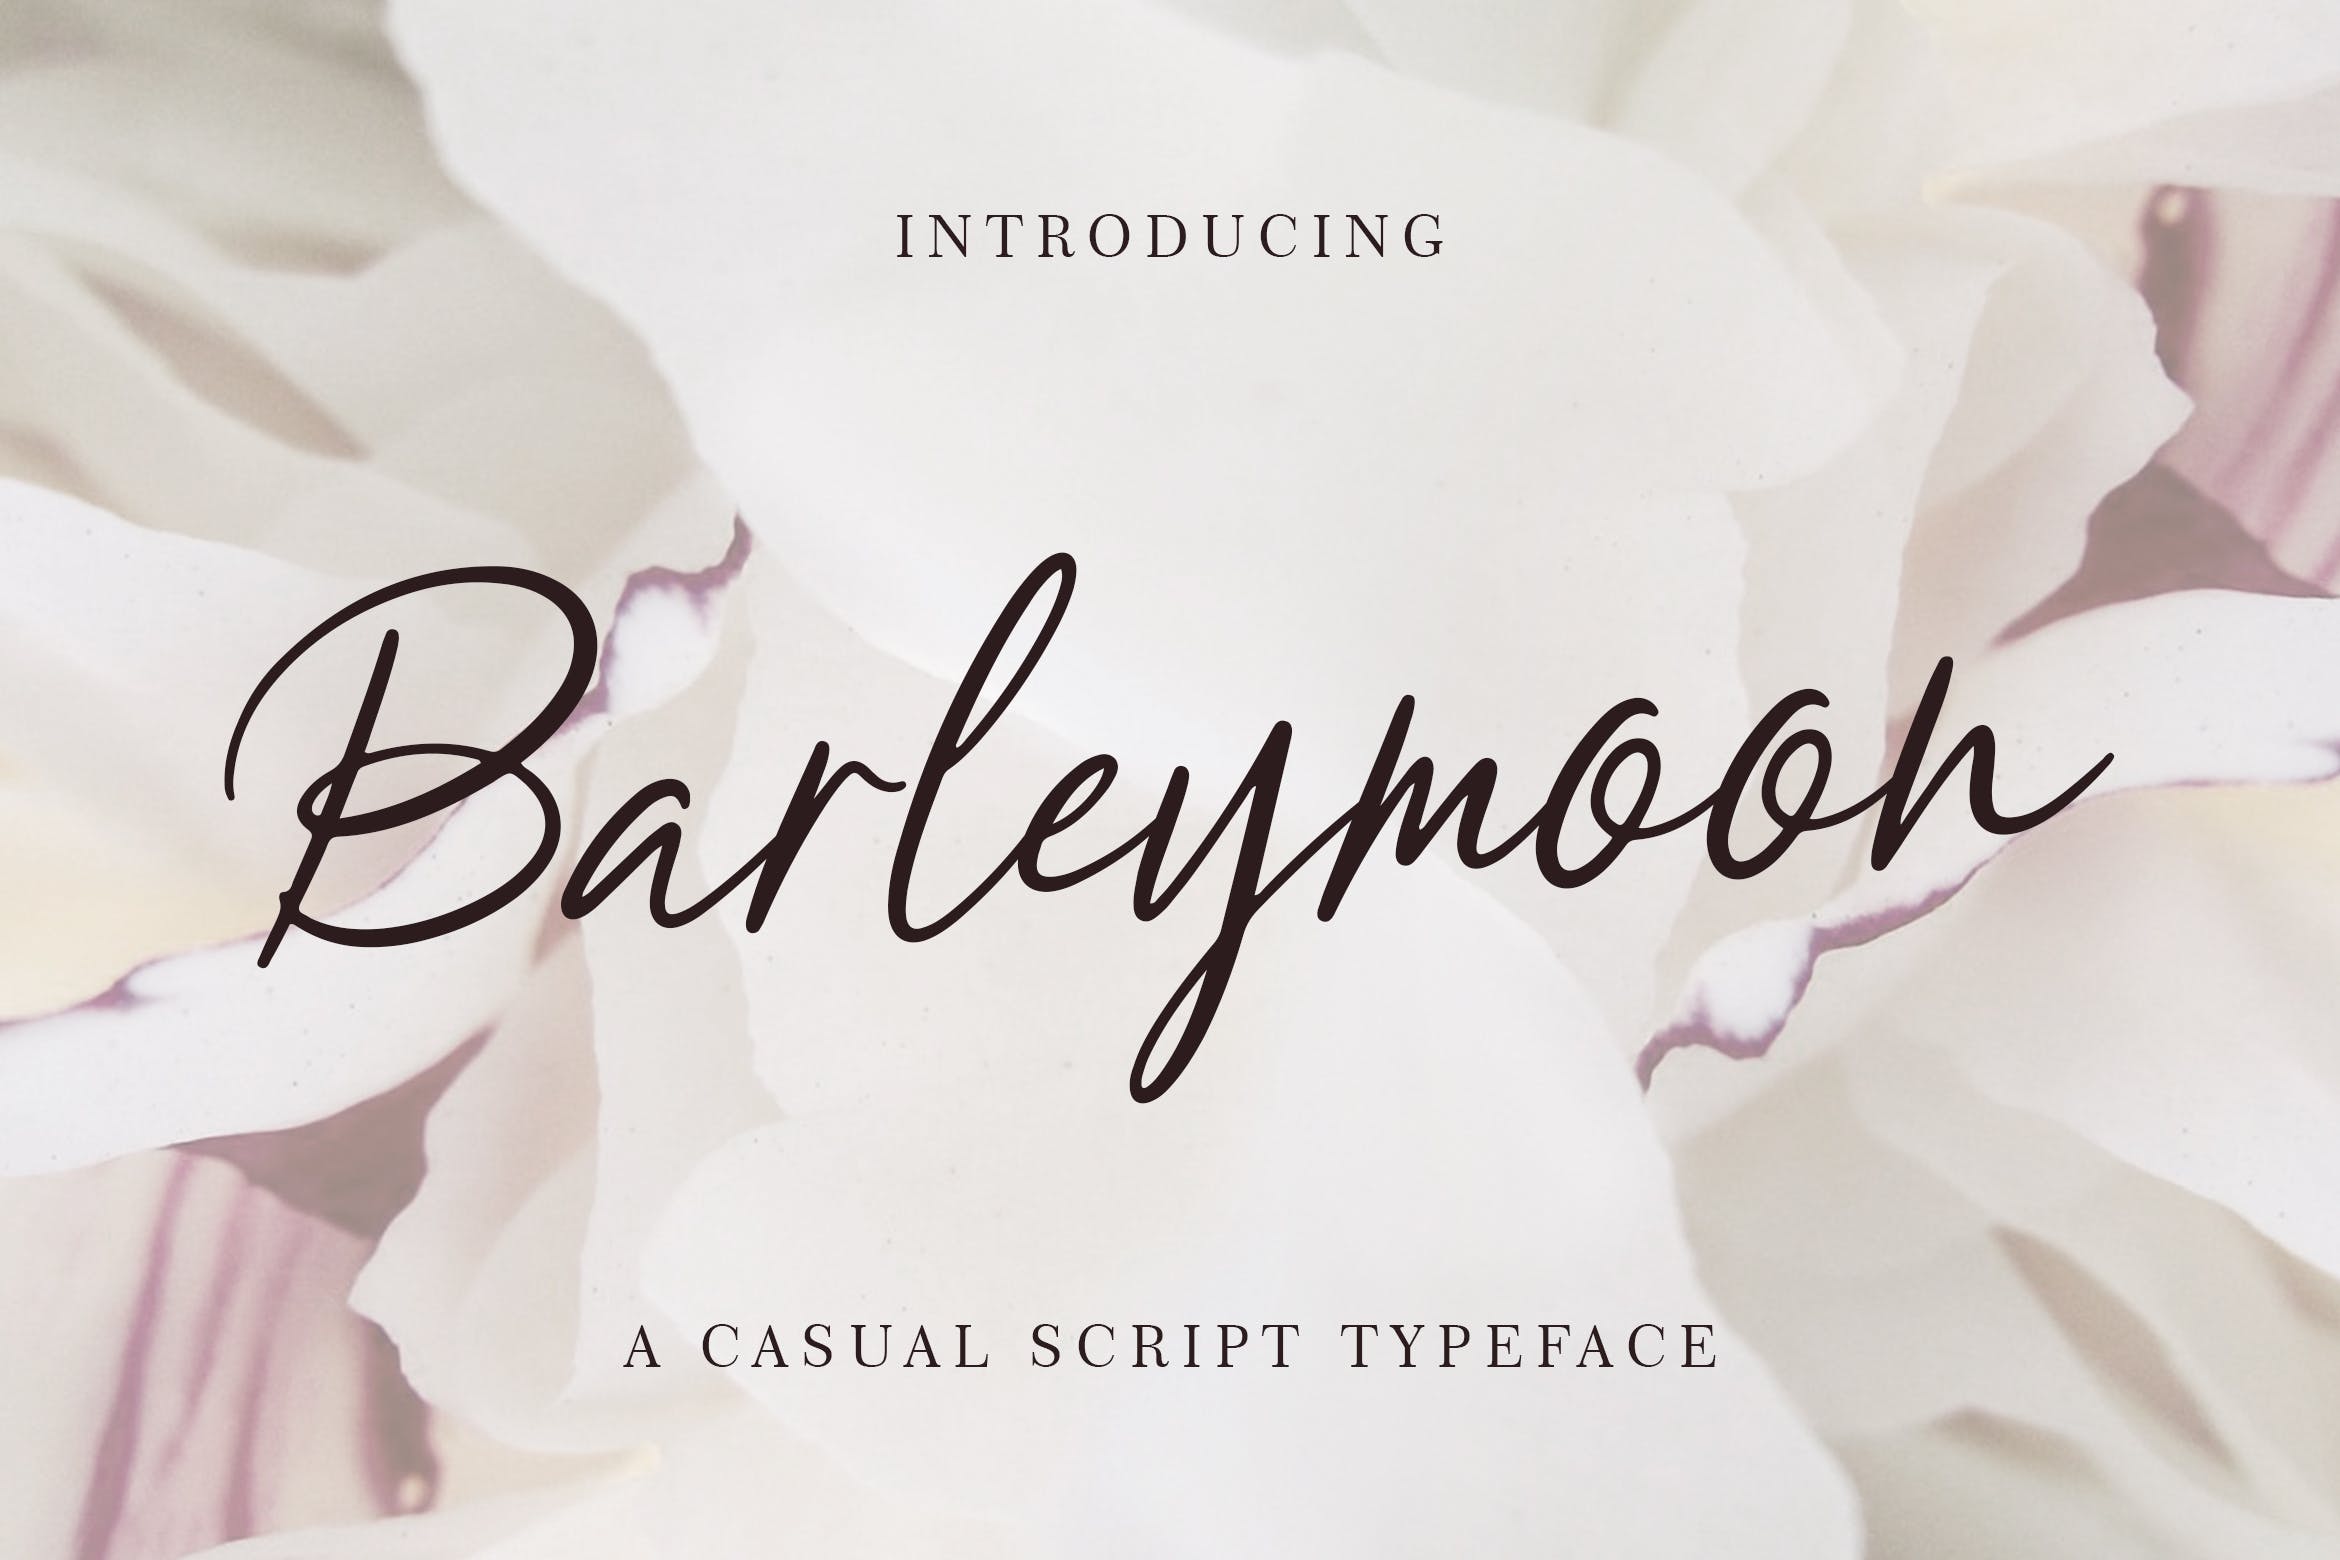 简约优雅英文钢笔书法字体 Barleymoon Beauty Script Font插图